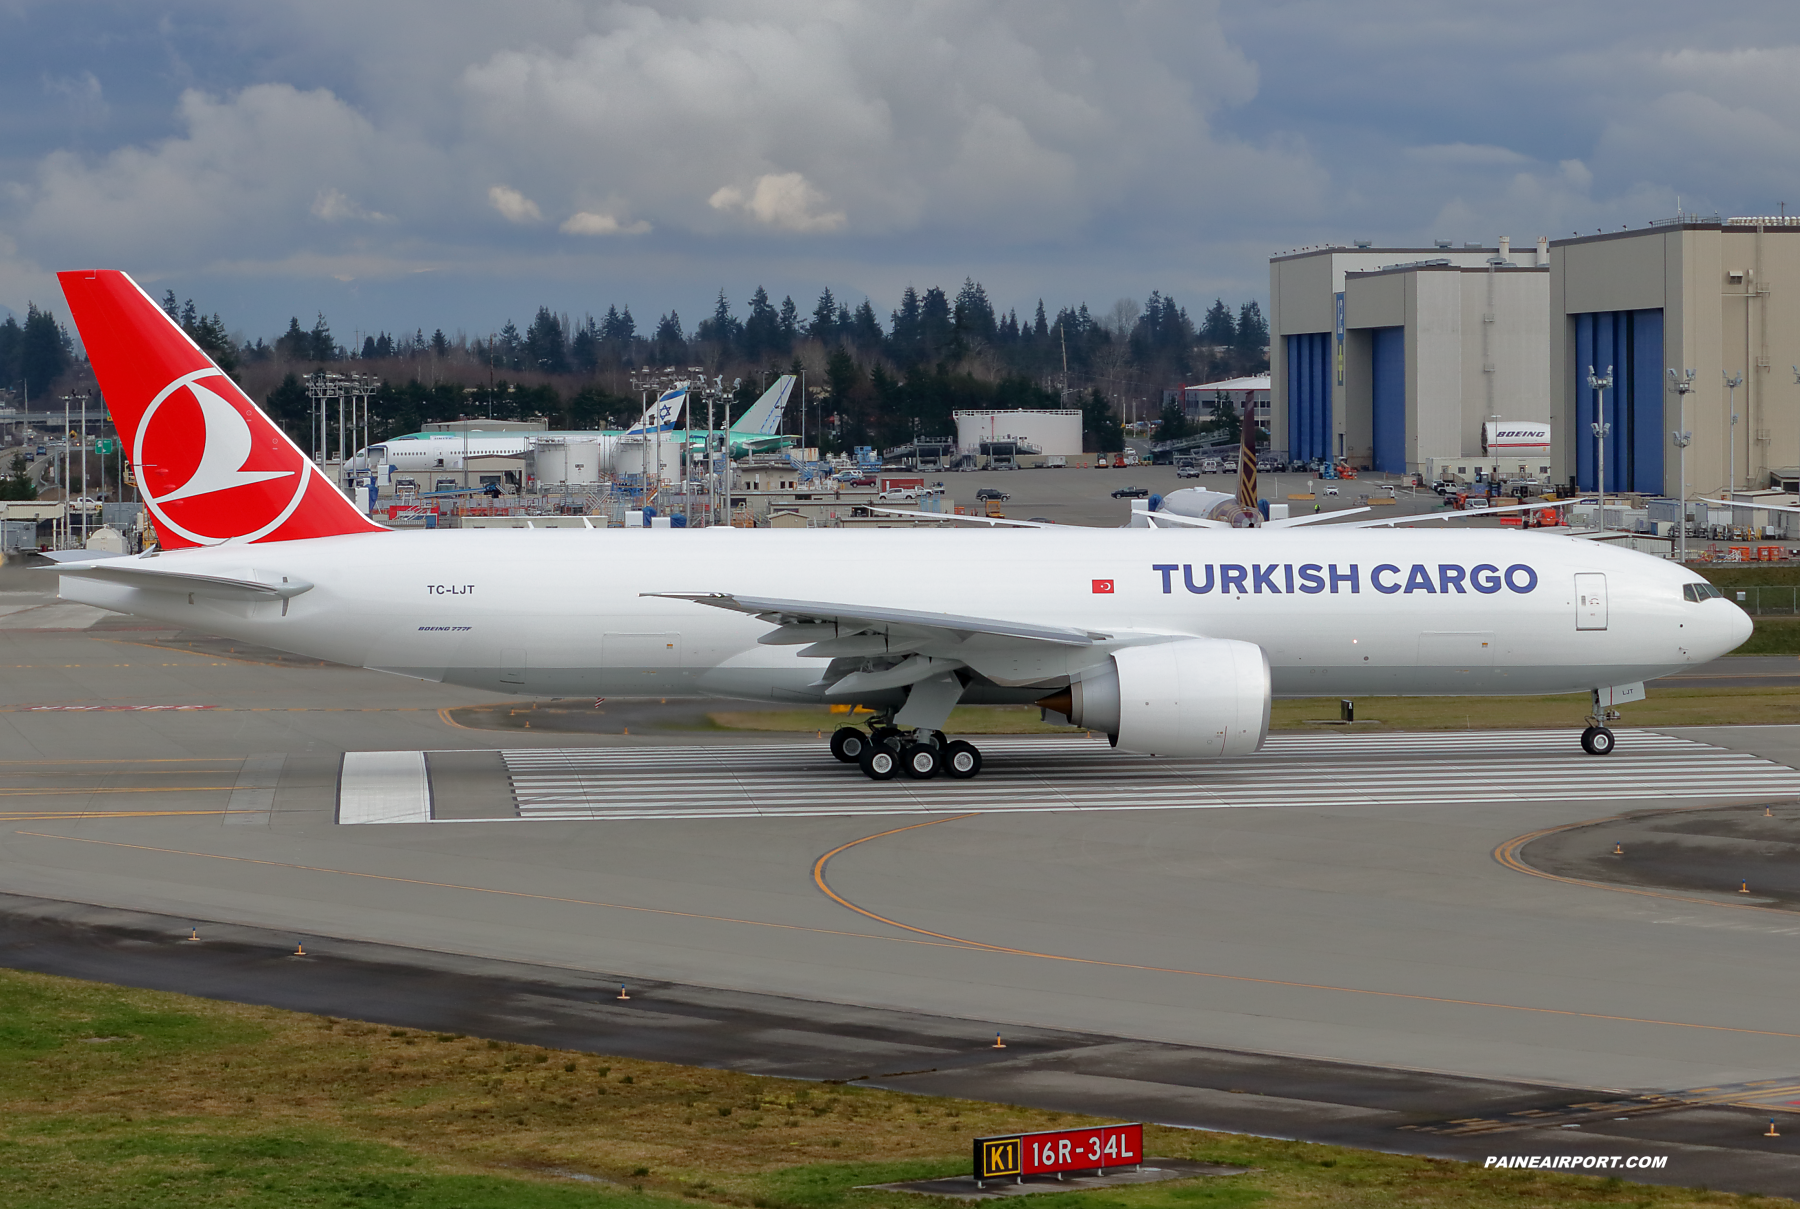 Turkish Airlines 777F TC-LJT at Paine Field